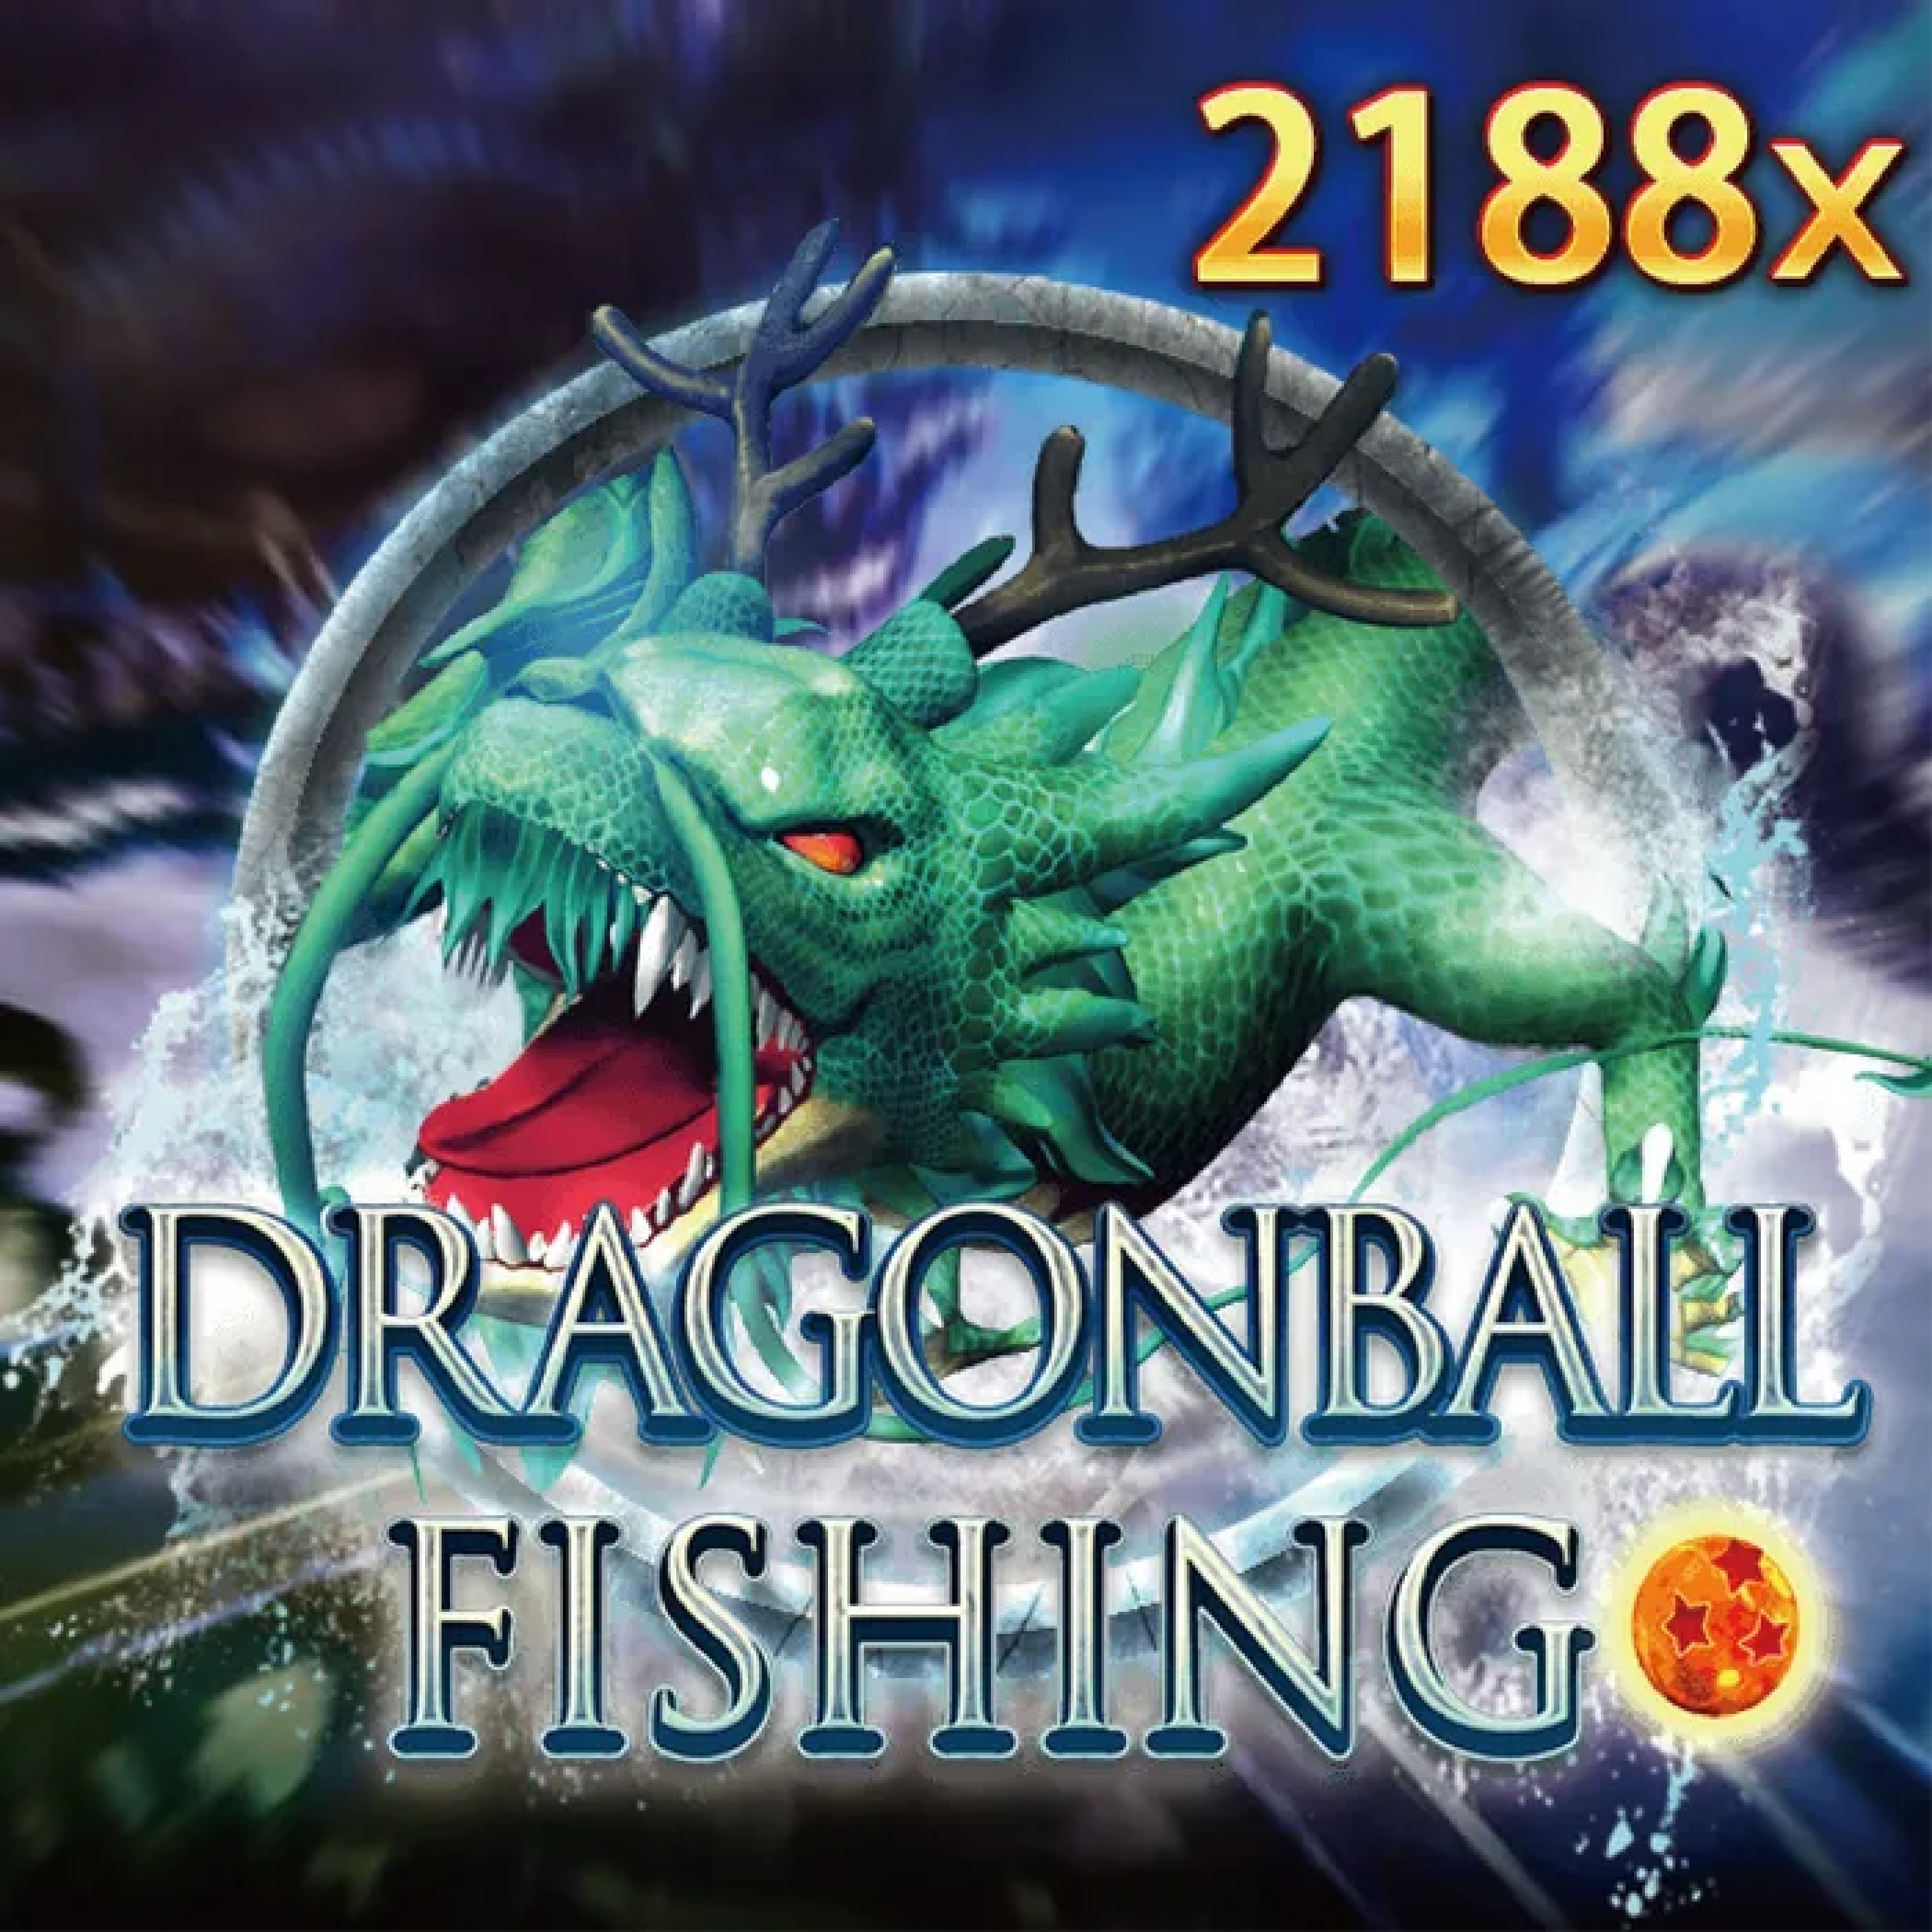 Dragonball Fishing